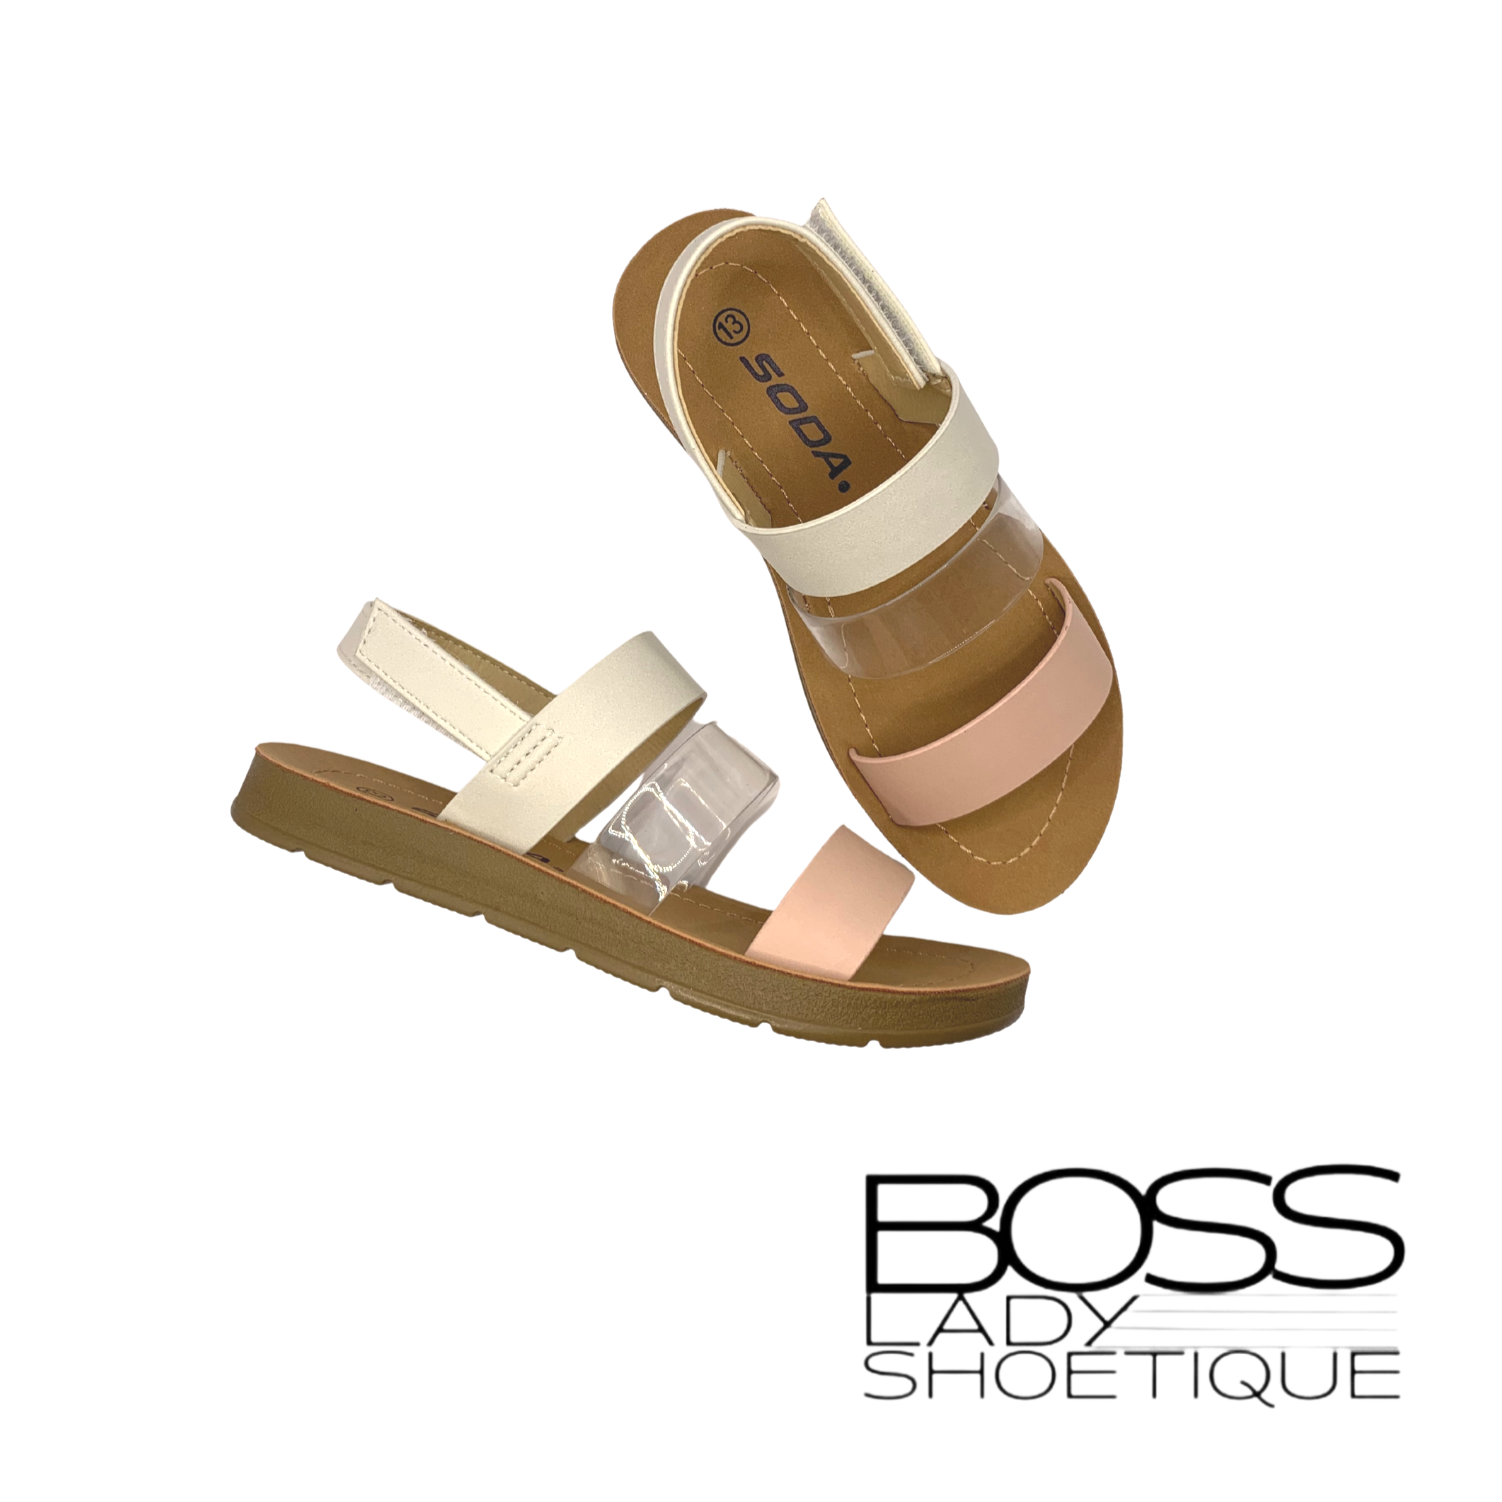 Tour Sandals- Kids - Boss Lady Shoetique 